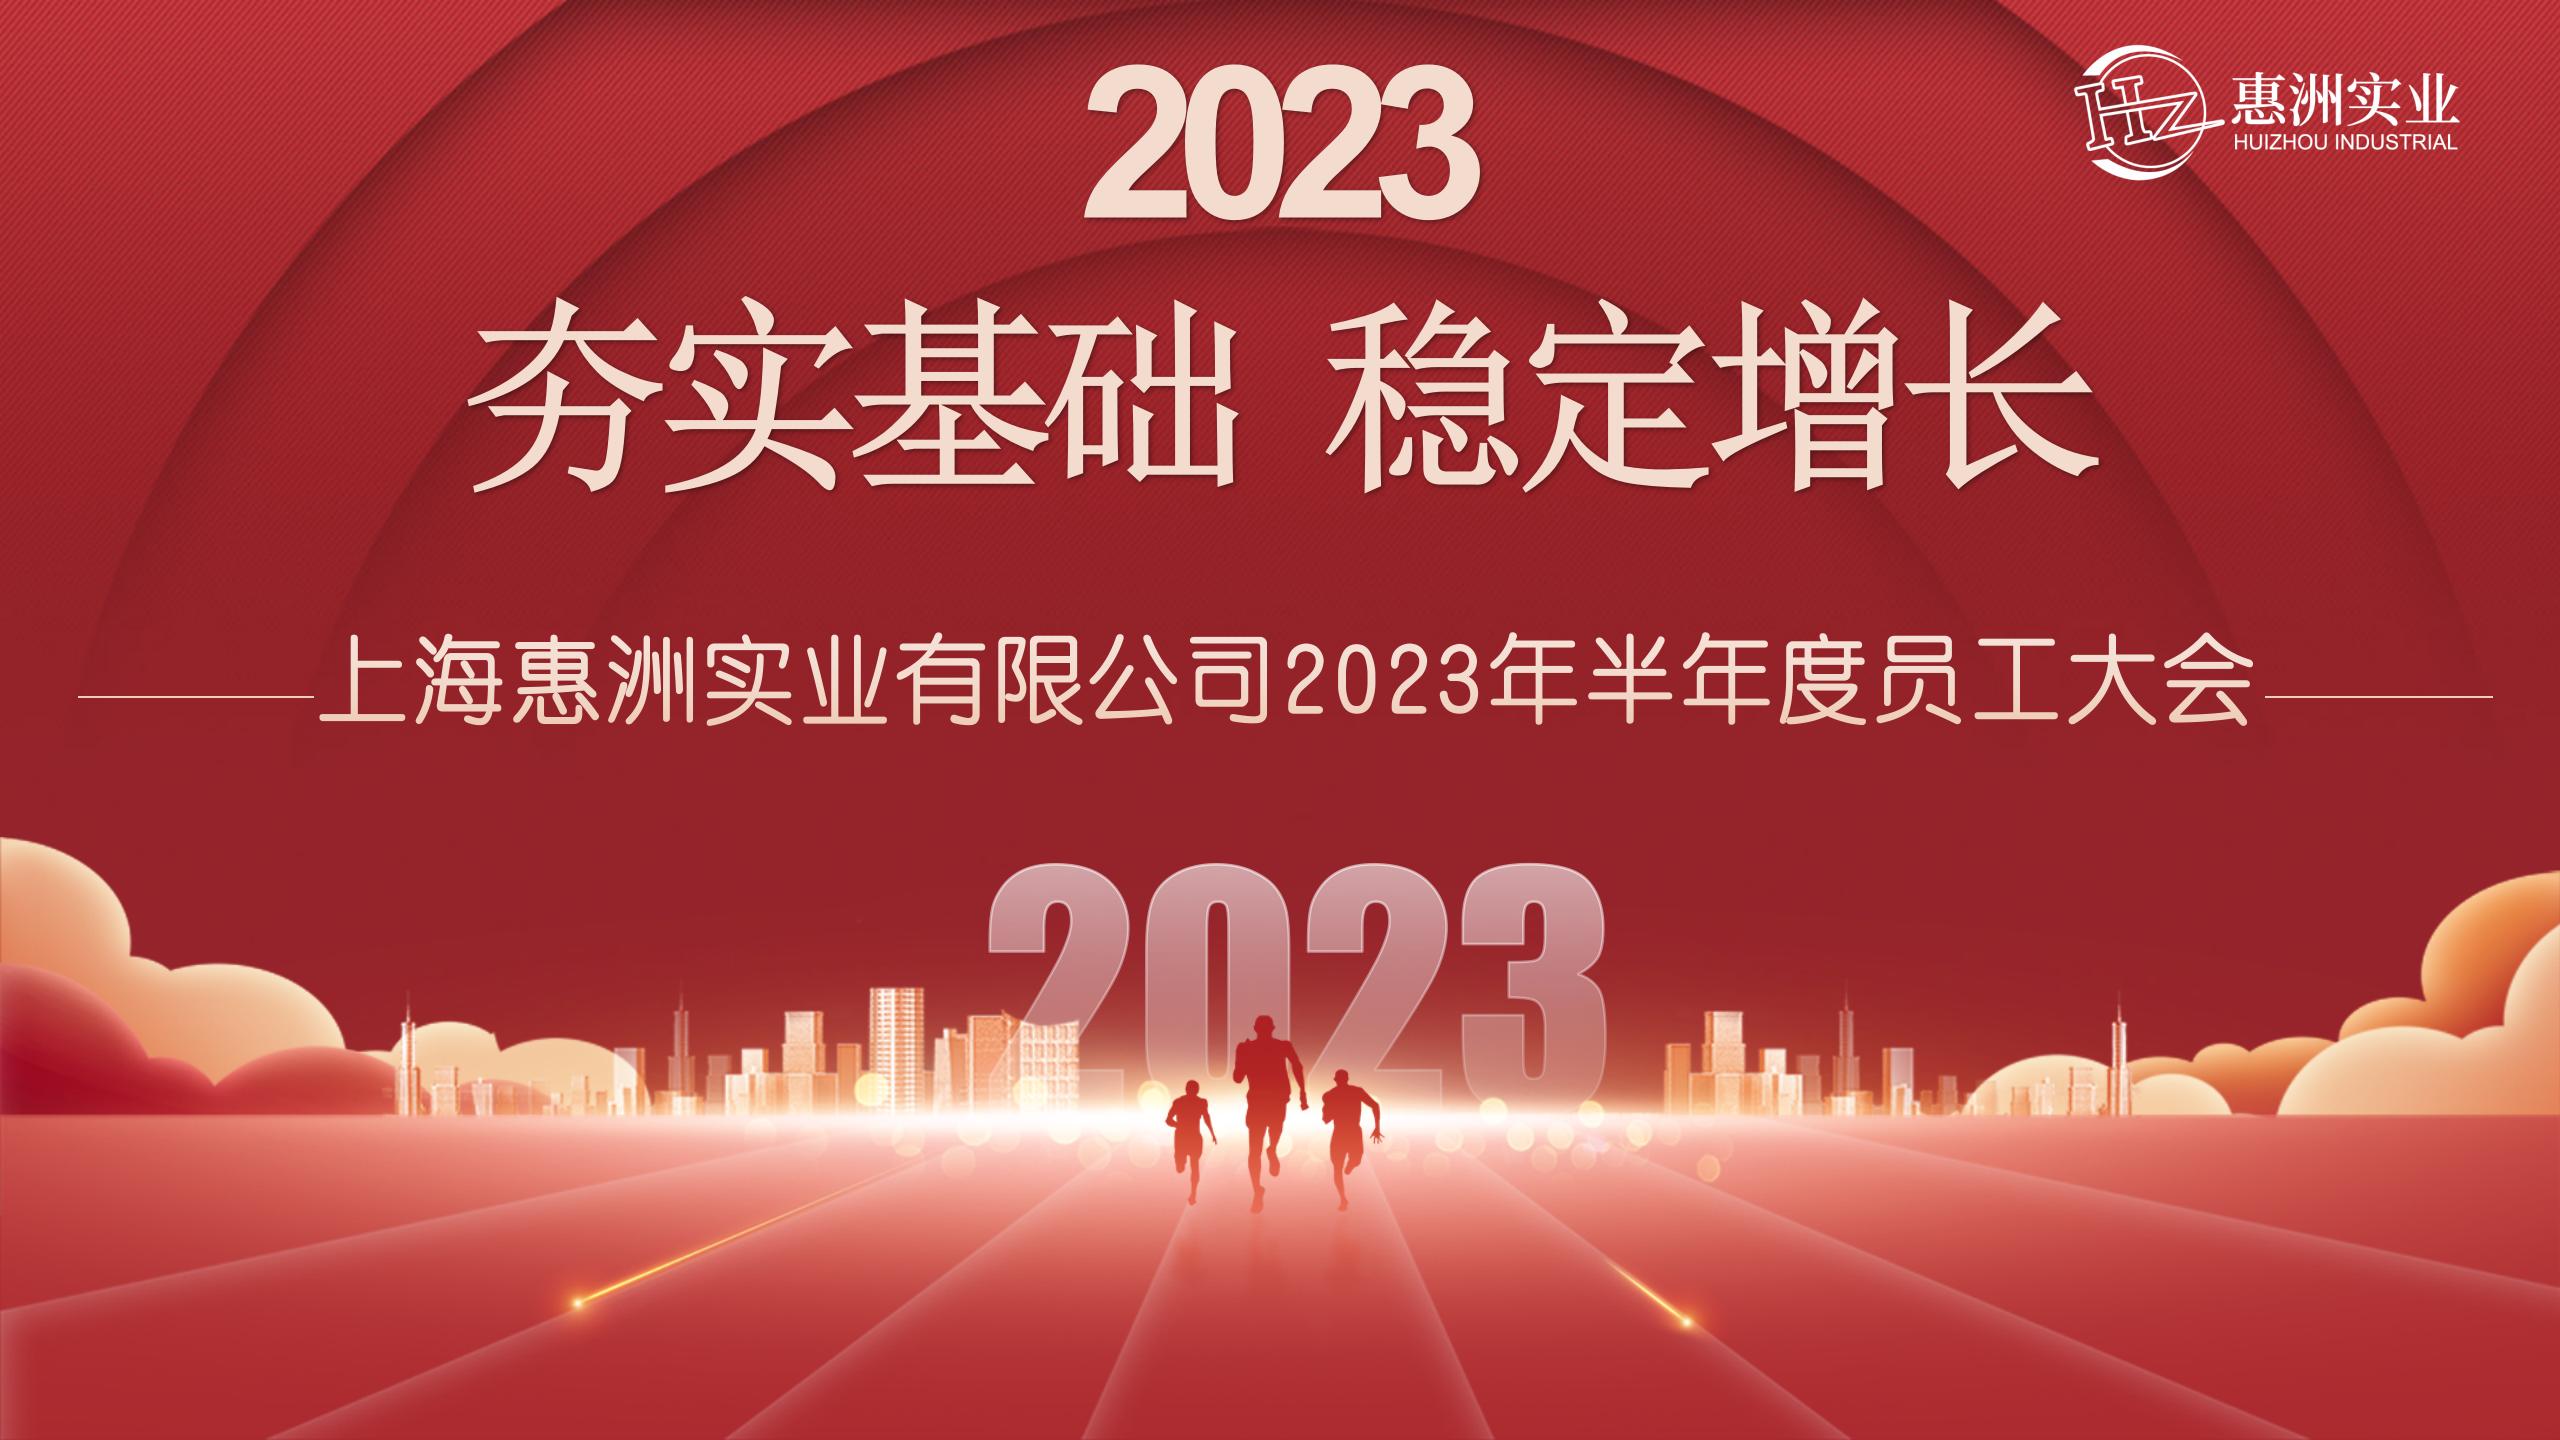 हुइझोउ अर्ध-वार्षिक स्टाफ मीटिंग 2023